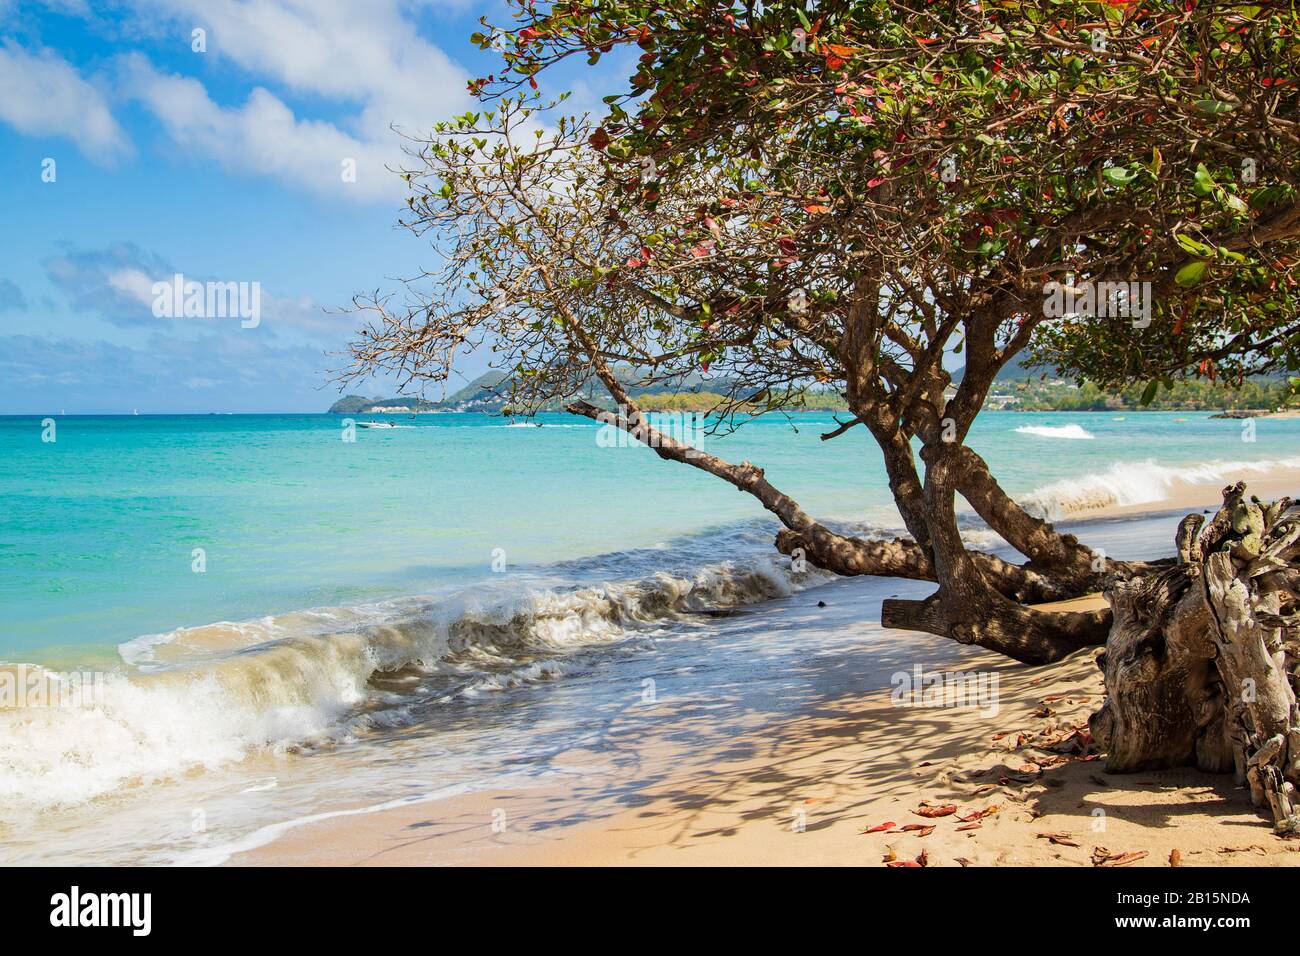 Einladende Strandlandschaft - Mandelbäume wachsen auf den Strand und eine energiegeladene brechende Welle an einem hellen Tag mit einem azurblauen Himmel und weißen Wolken Stockfoto